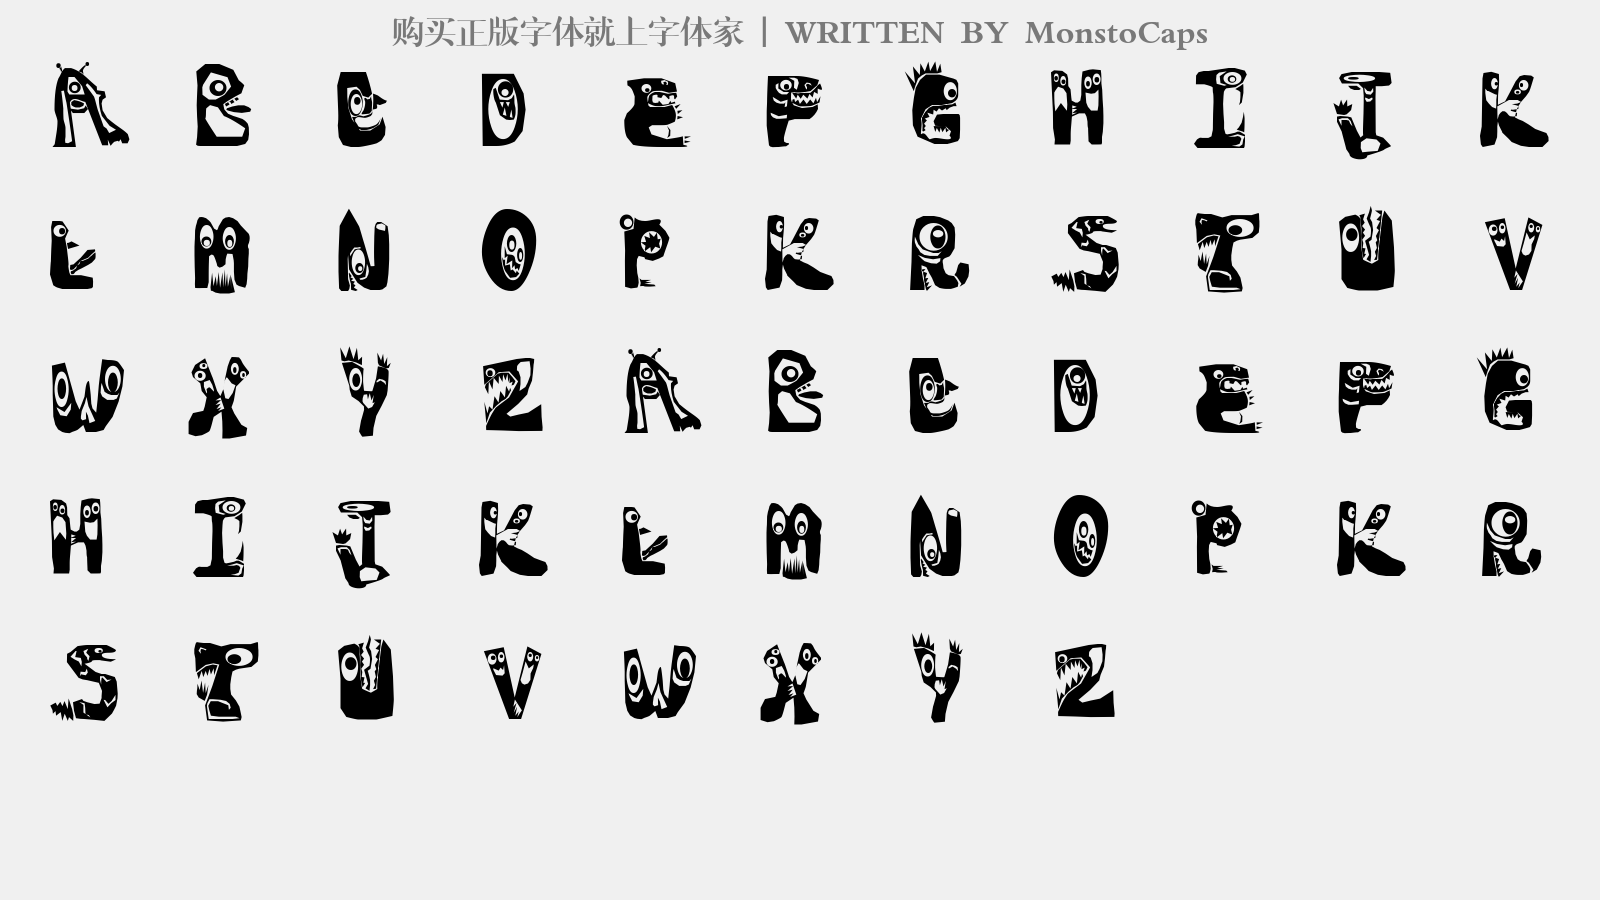 MonstoCaps - 大写字母/小写字母/数字